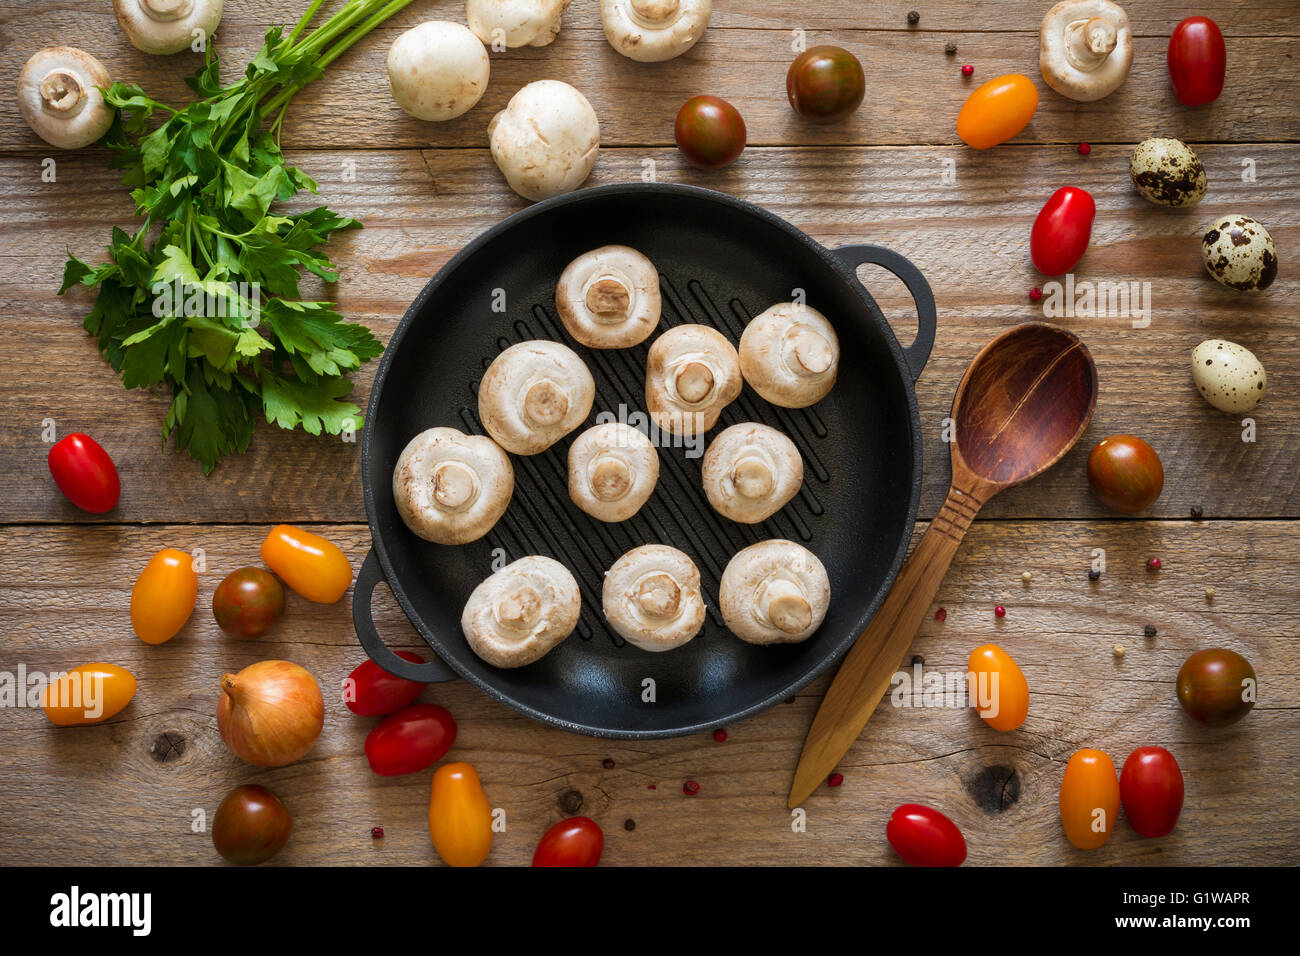 Sfondo di cibo: alimenti sani ingredienti per la cottura su tavola in legno rustico, vlew superiore Foto Stock